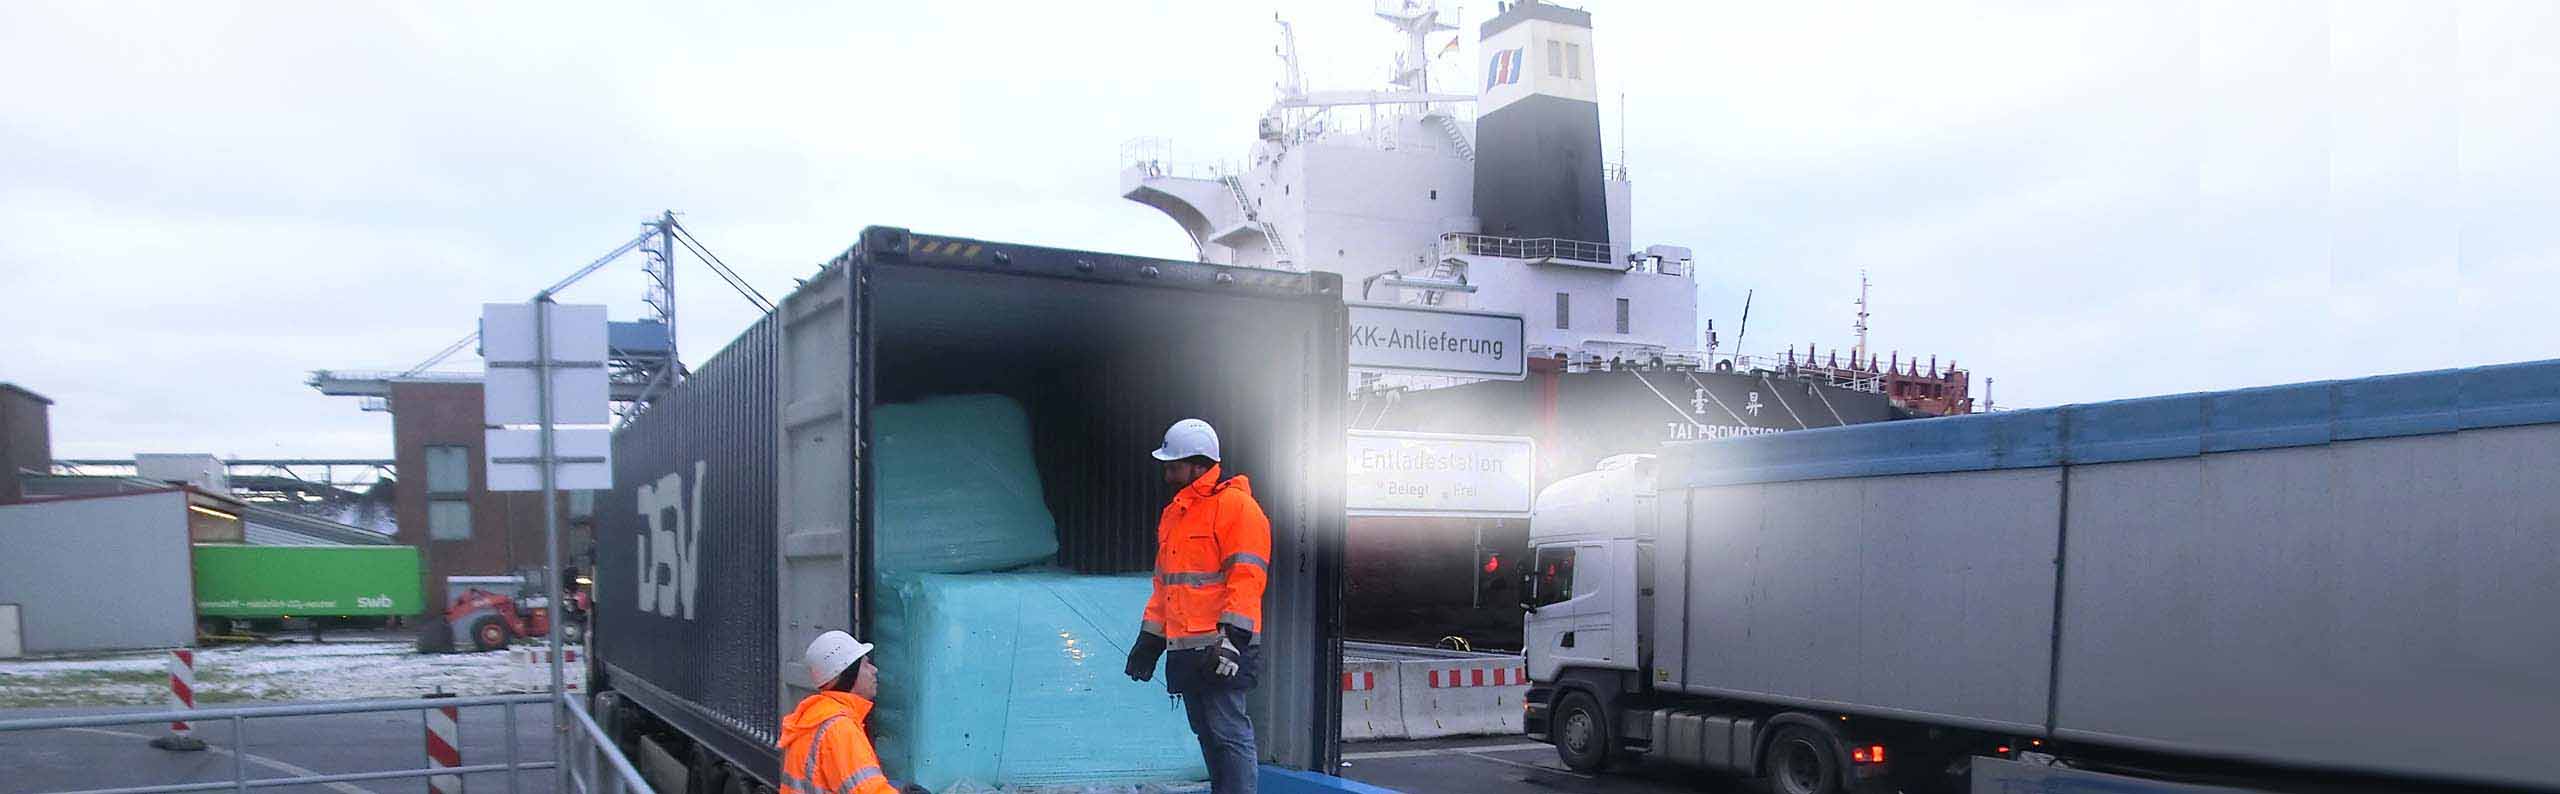 swb organisiert eine umfangreiche Logistik für die Entsorgung.